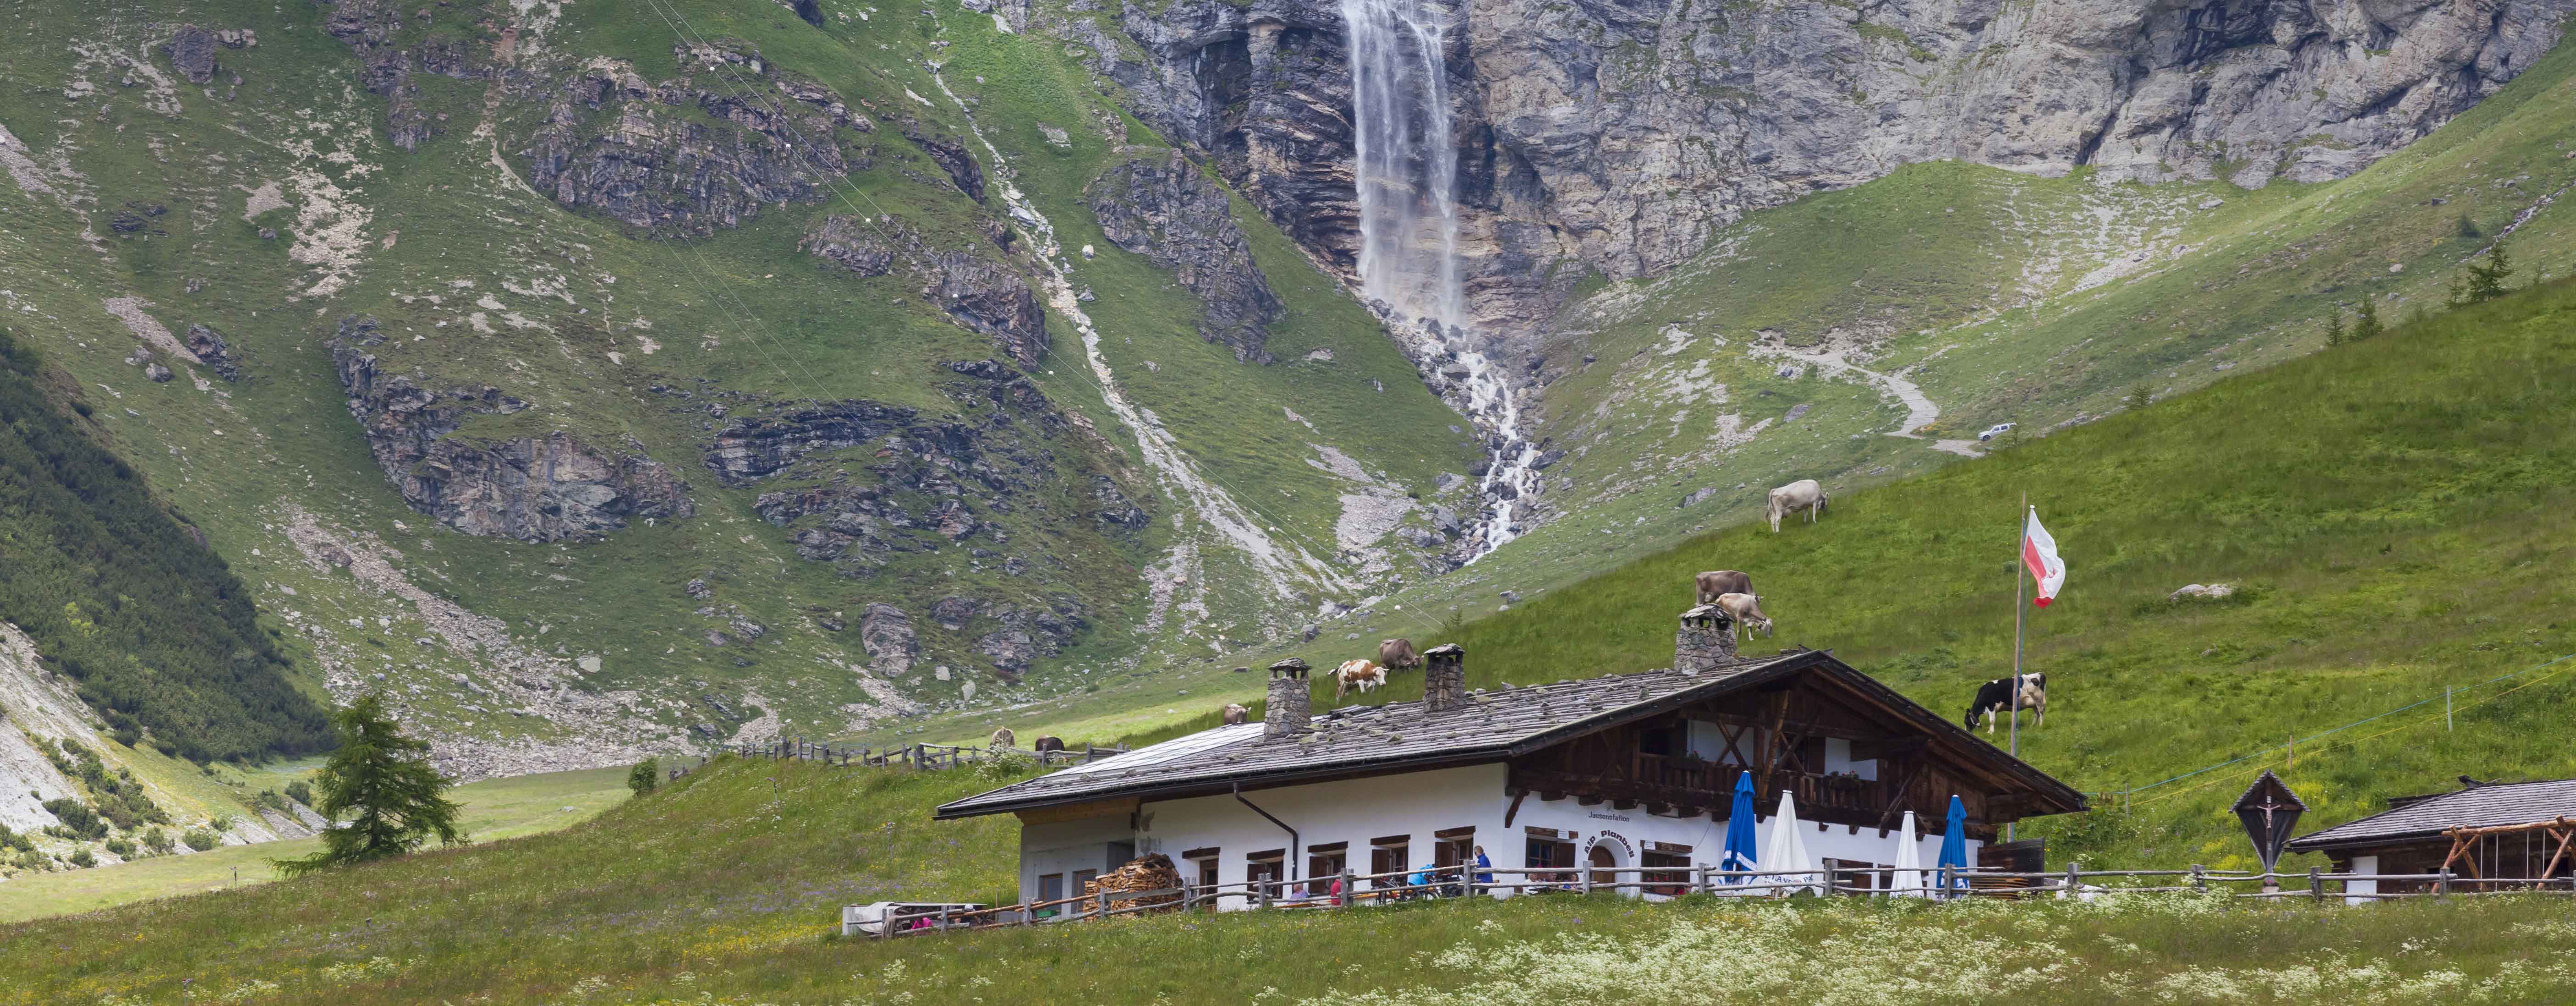 Gite ed escursioni in Val Venosta